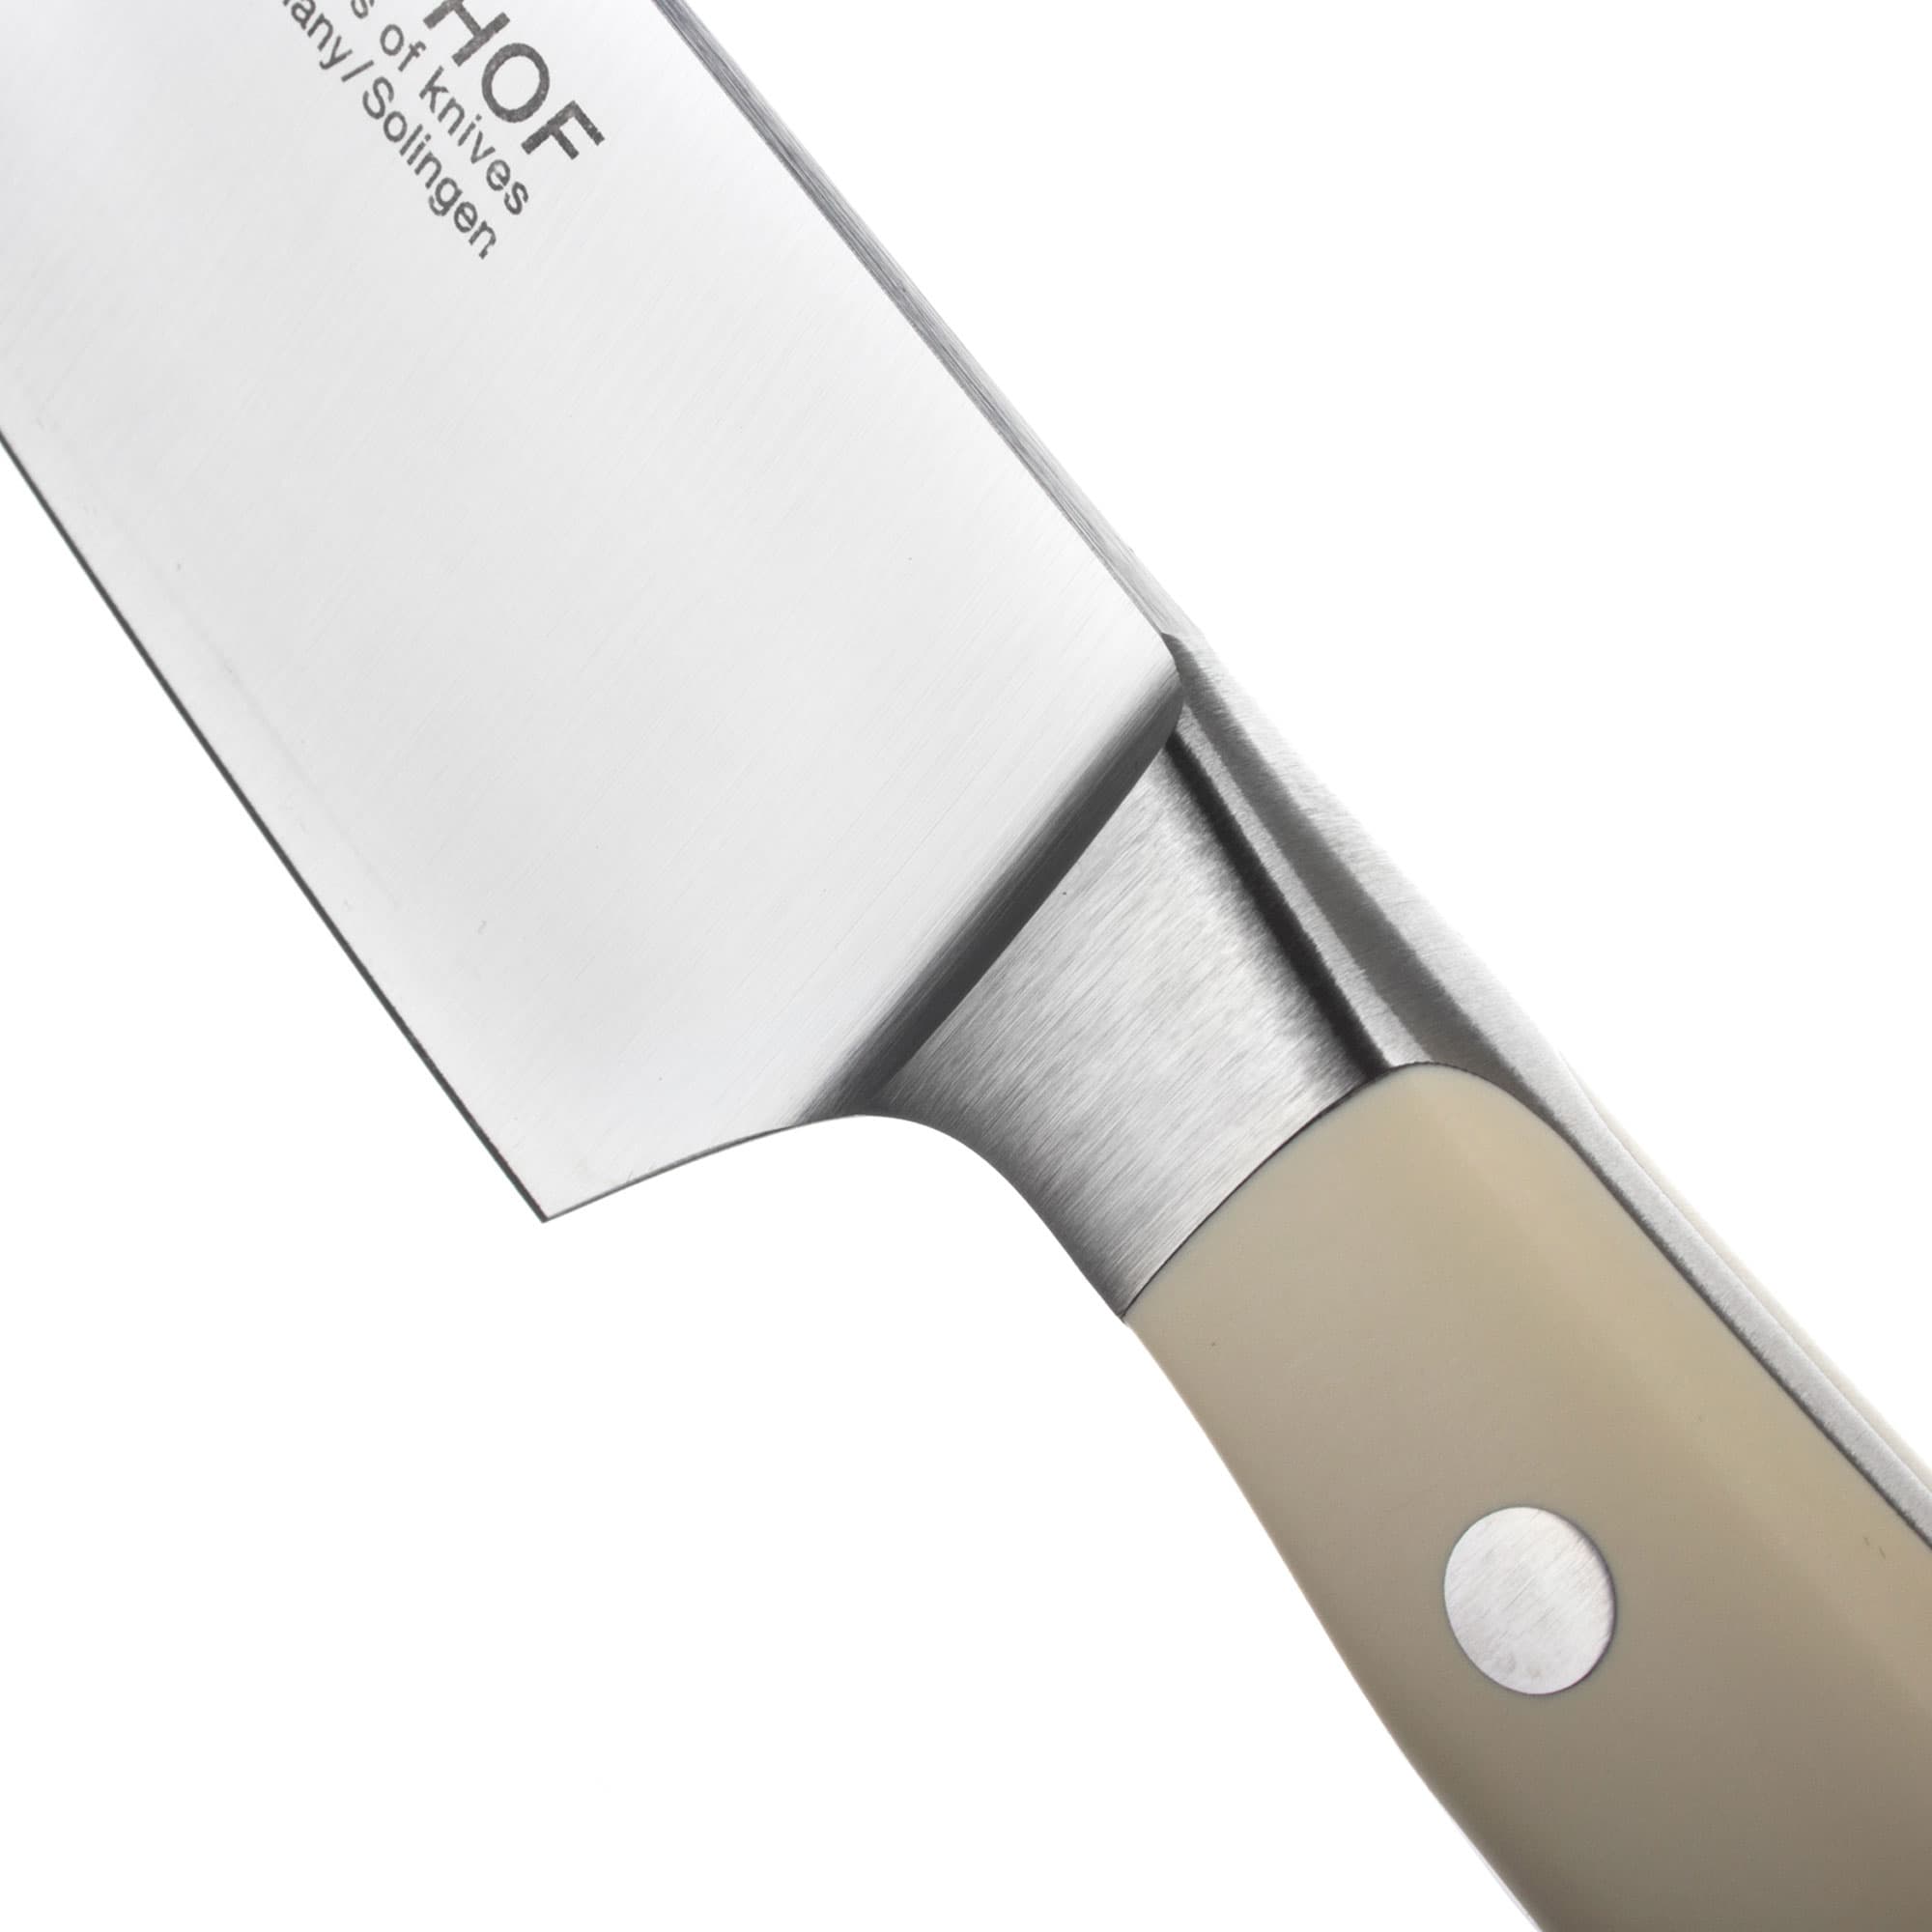 Профессиональный поварской кухонный нож 16 см, Ikon Cream White, WUESTHOF, Золинген, Германия